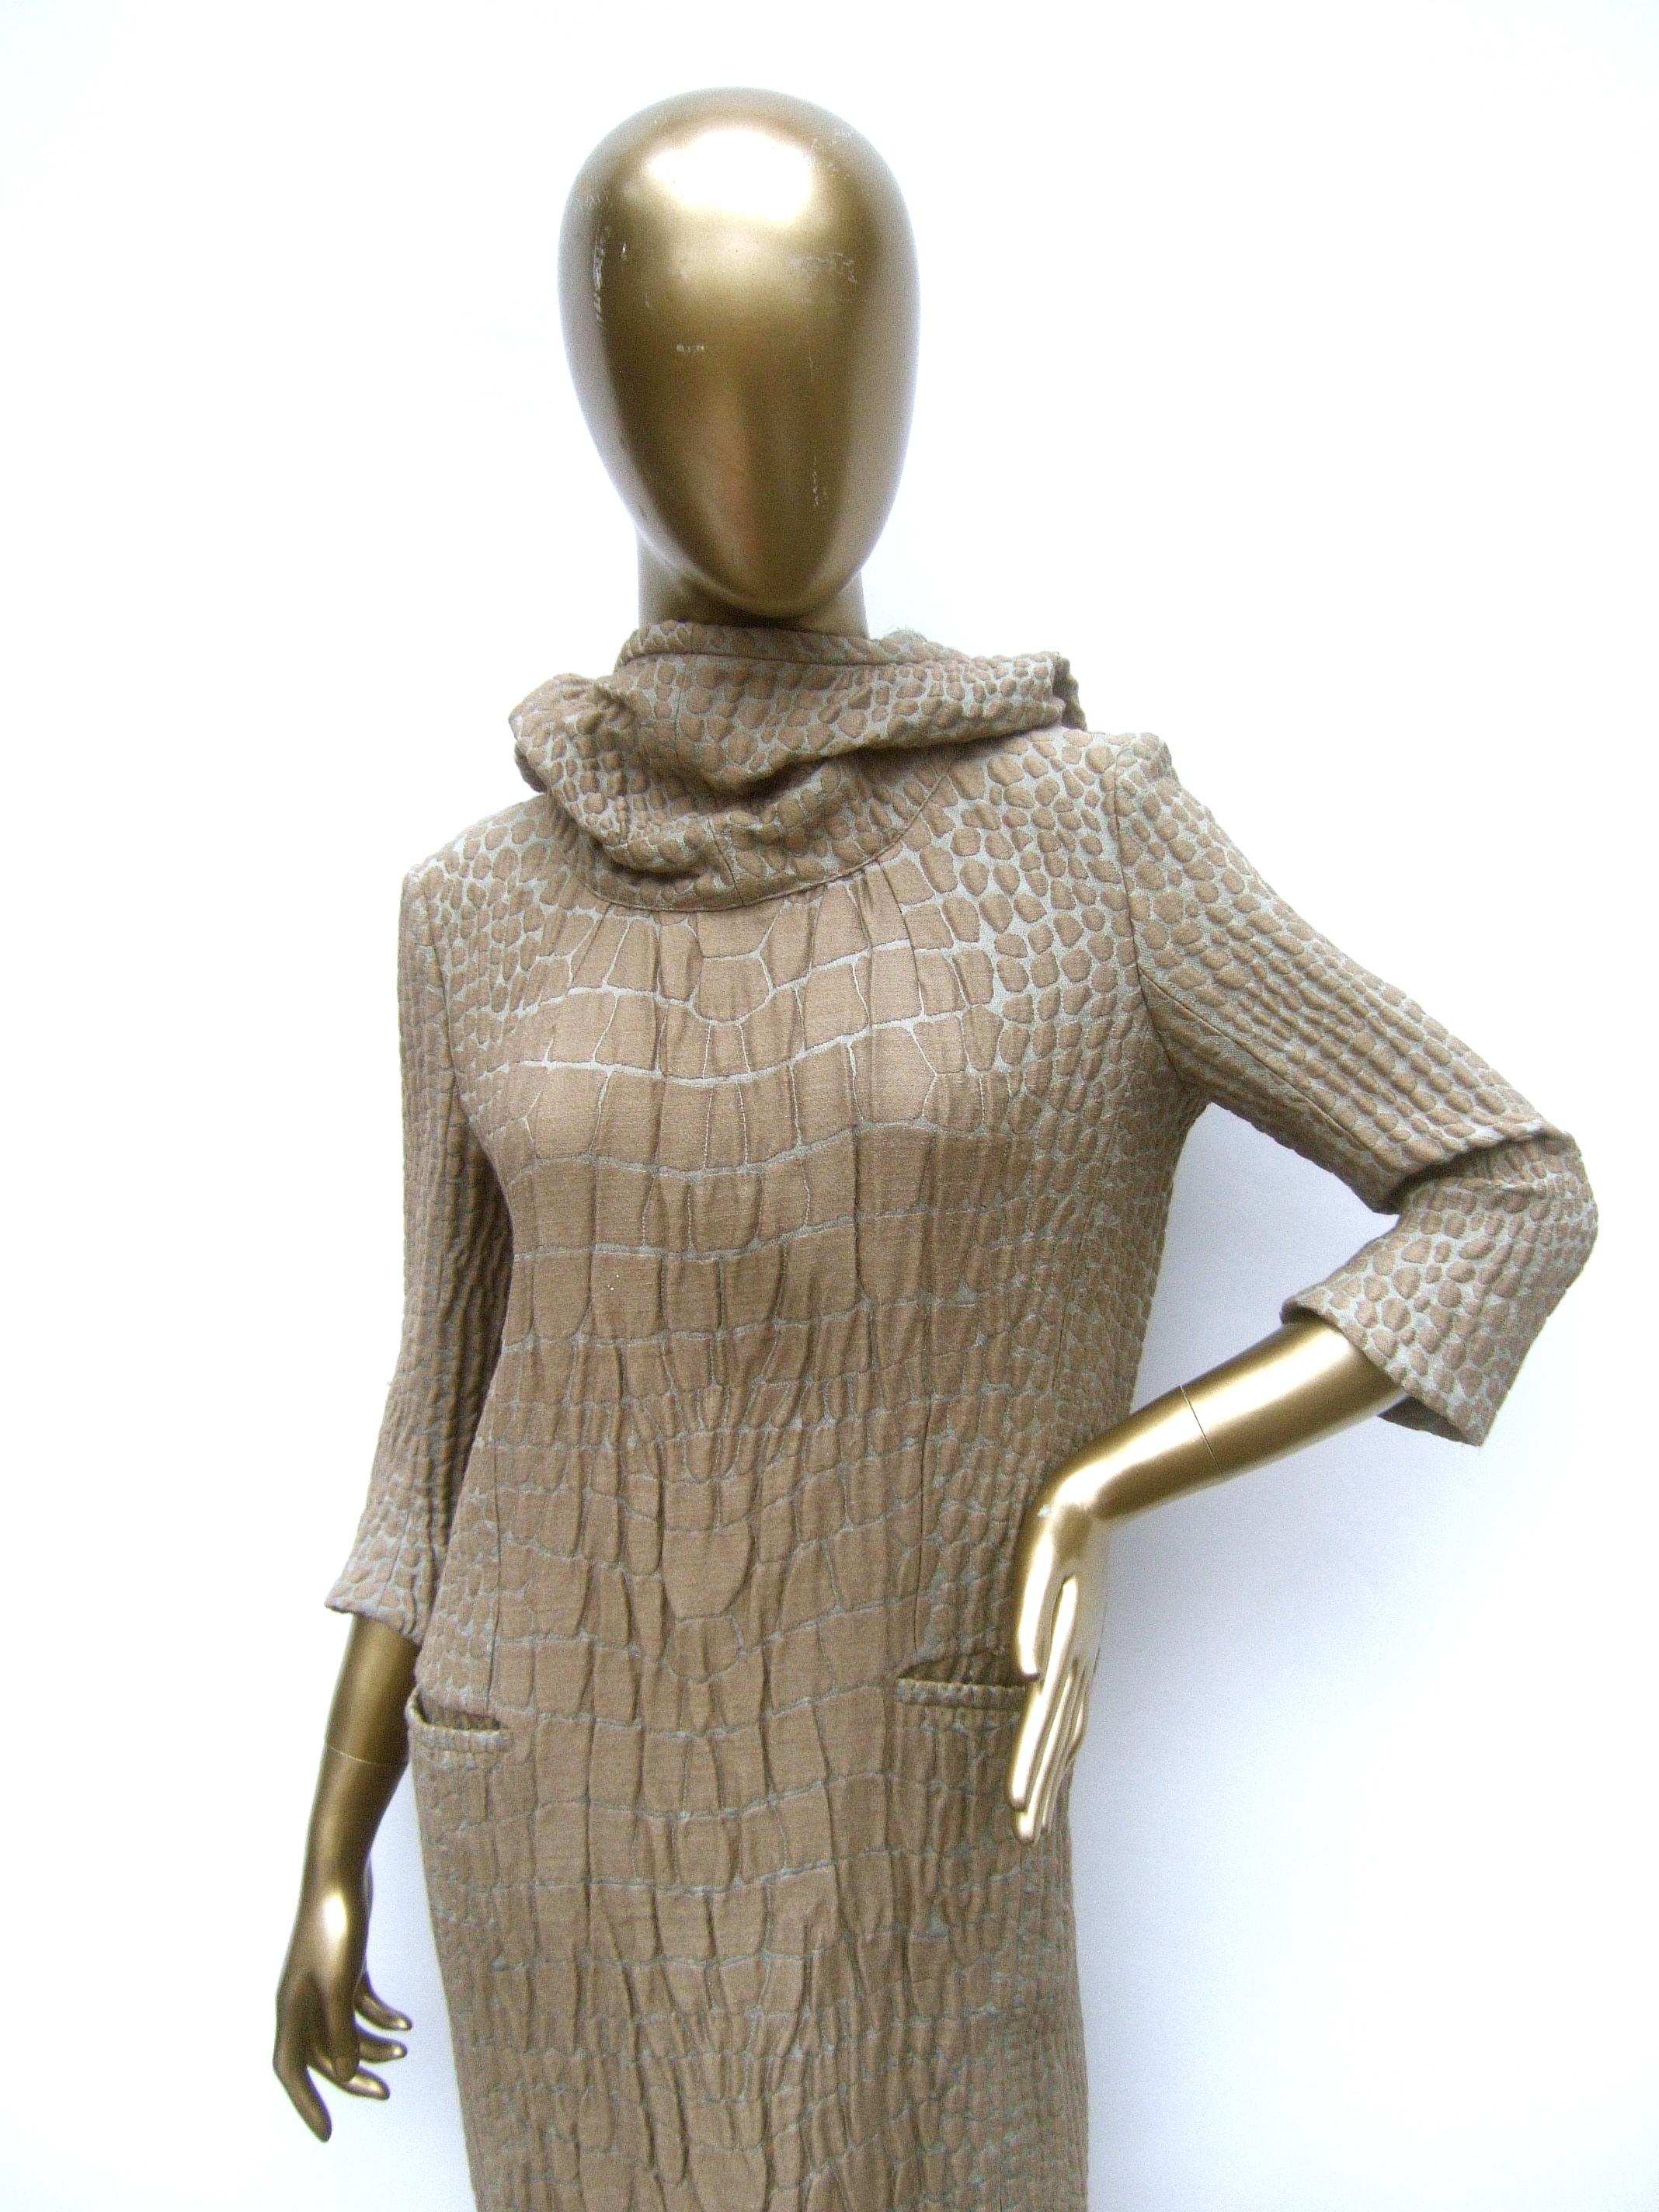 Yves Saint Laurent Rive Gauche Avant-Garde Hooded Dress c 21st C 8